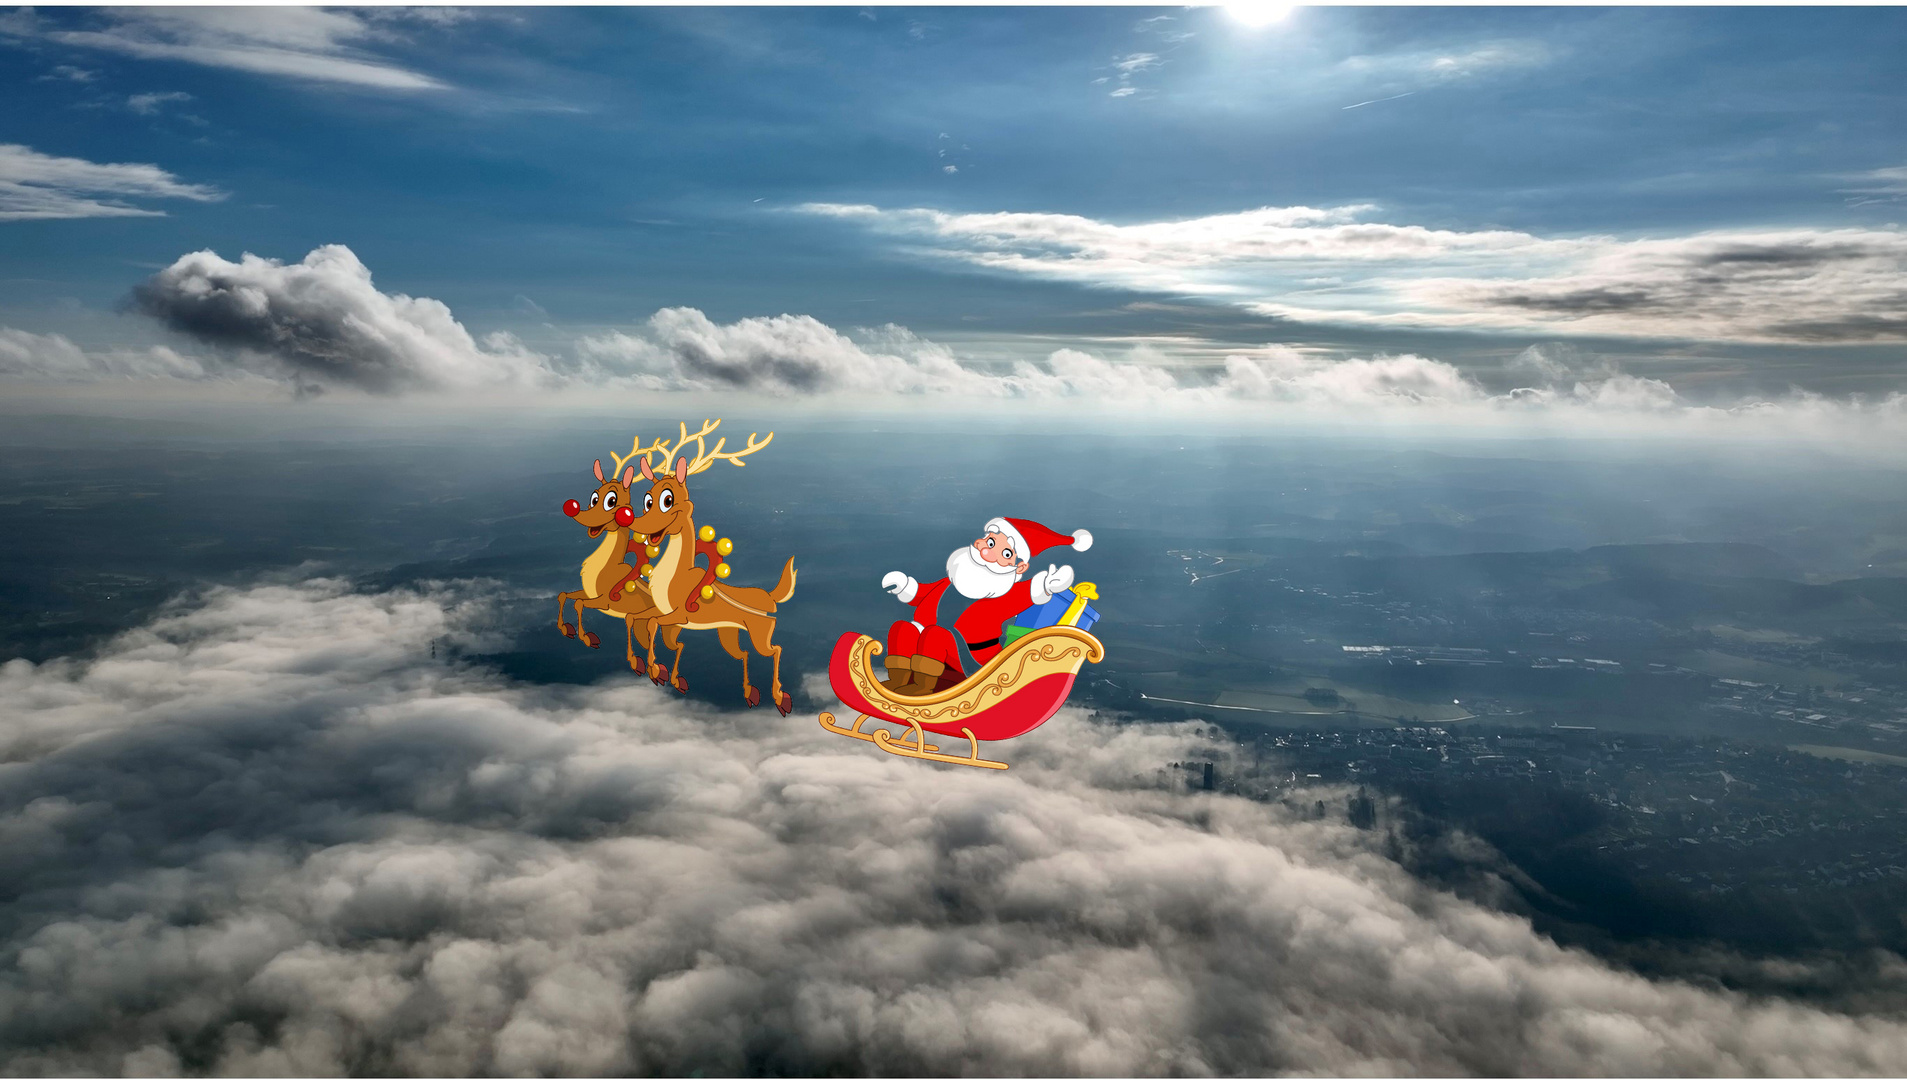 Ritt über den Wolken, Santa Claus übt für Weihnachten